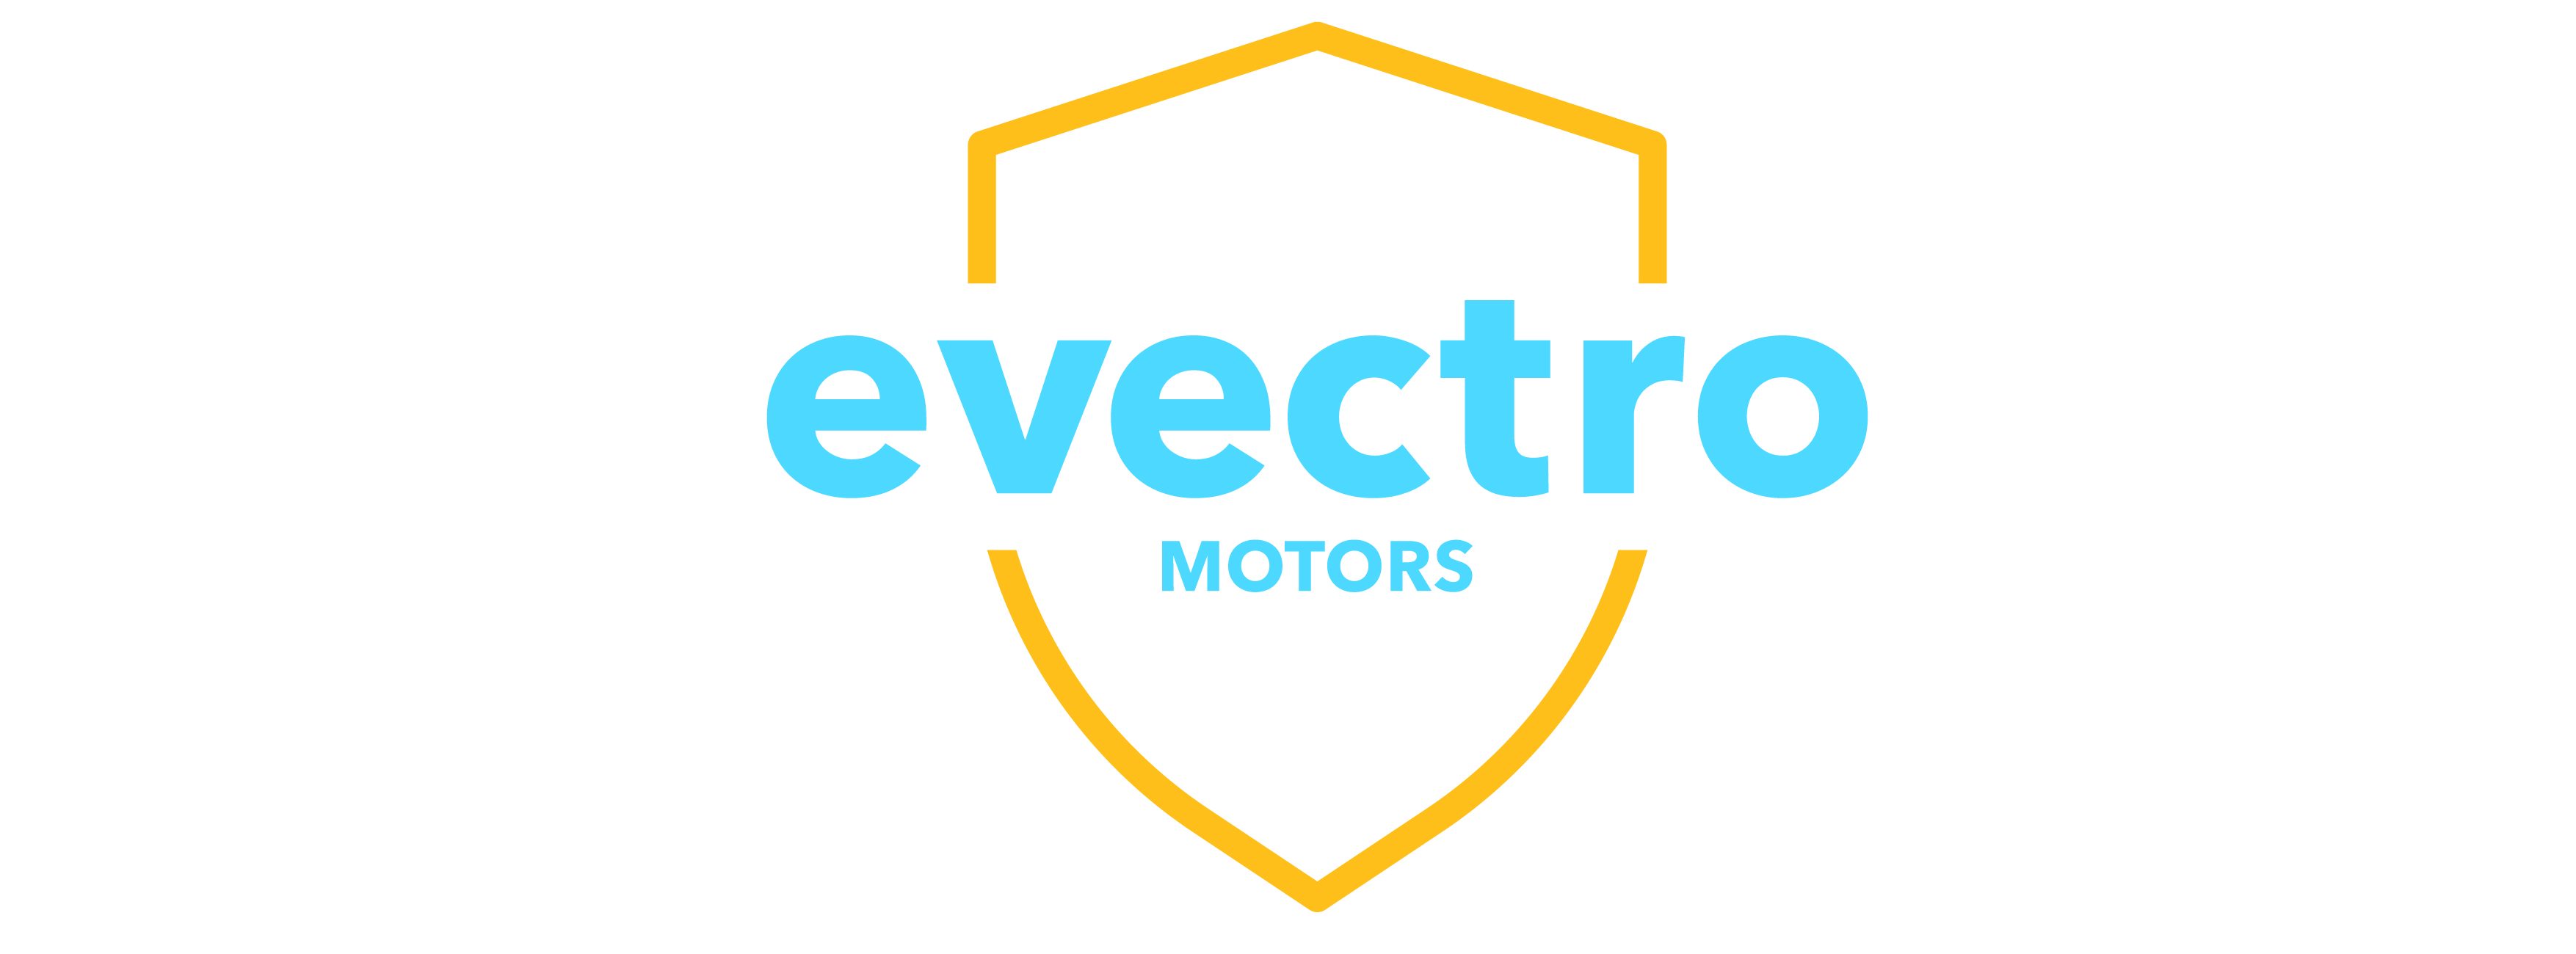 evectro motors